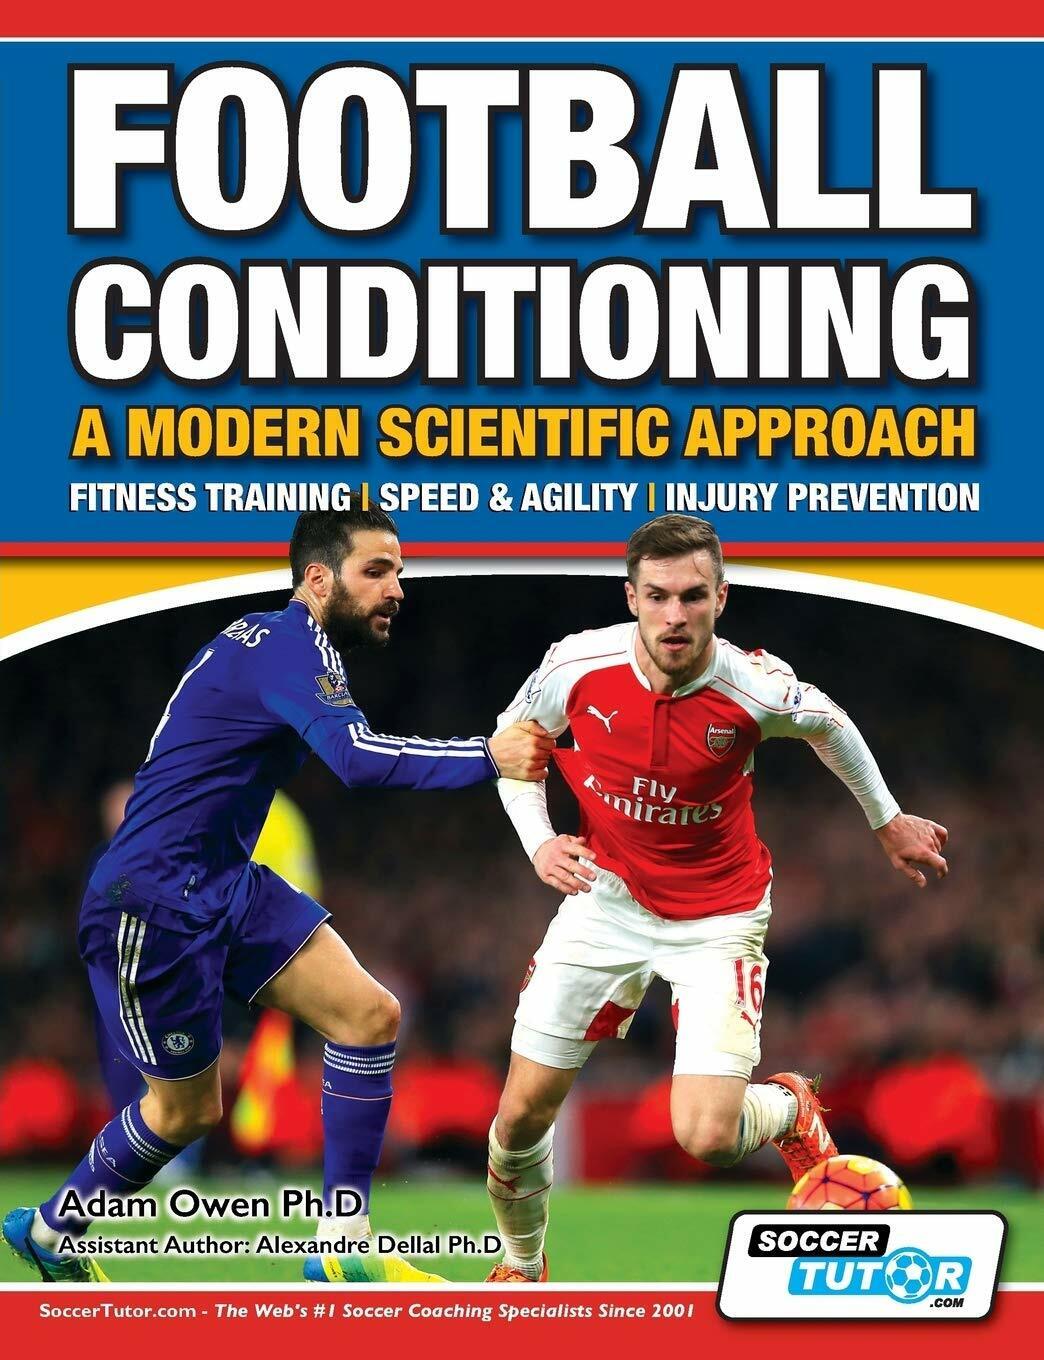 Football Conditioning A Modern Scientific Approach - Adam Owen Ph. D - 2016